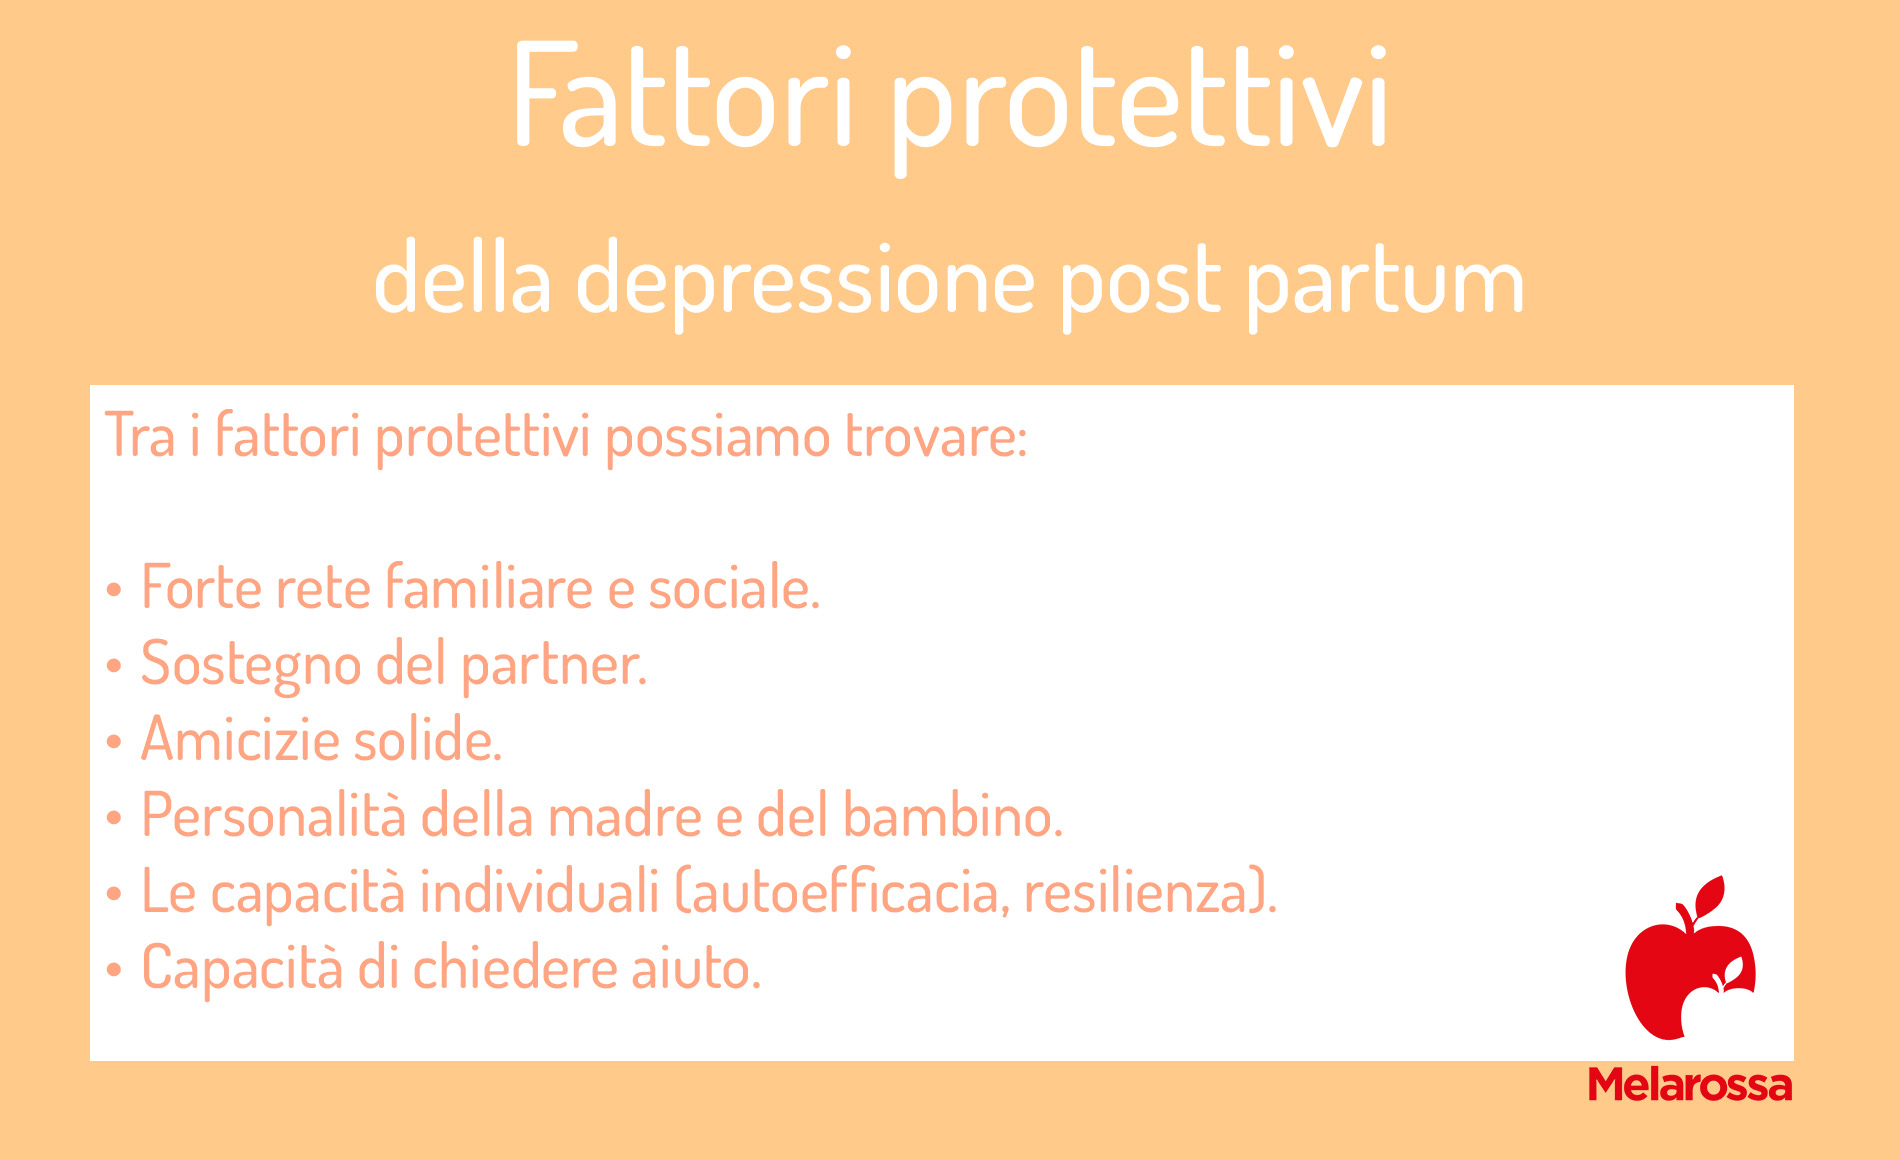 depressione post partum: fattori protettivi